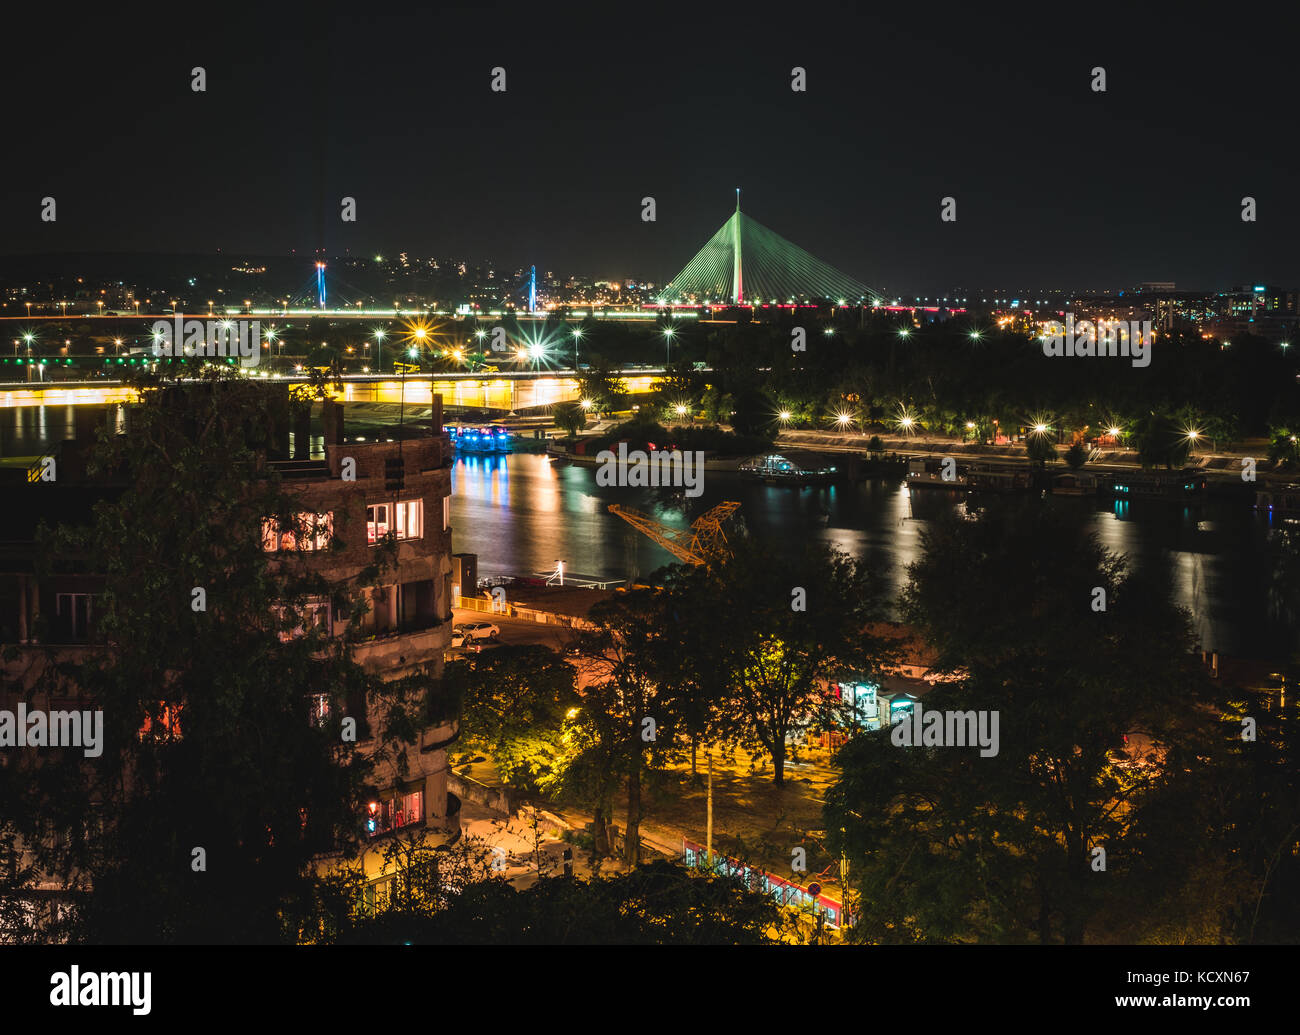 A Belgrado, in Serbia. vista notturna su i ponti sul fiume Sava. Foto Stock